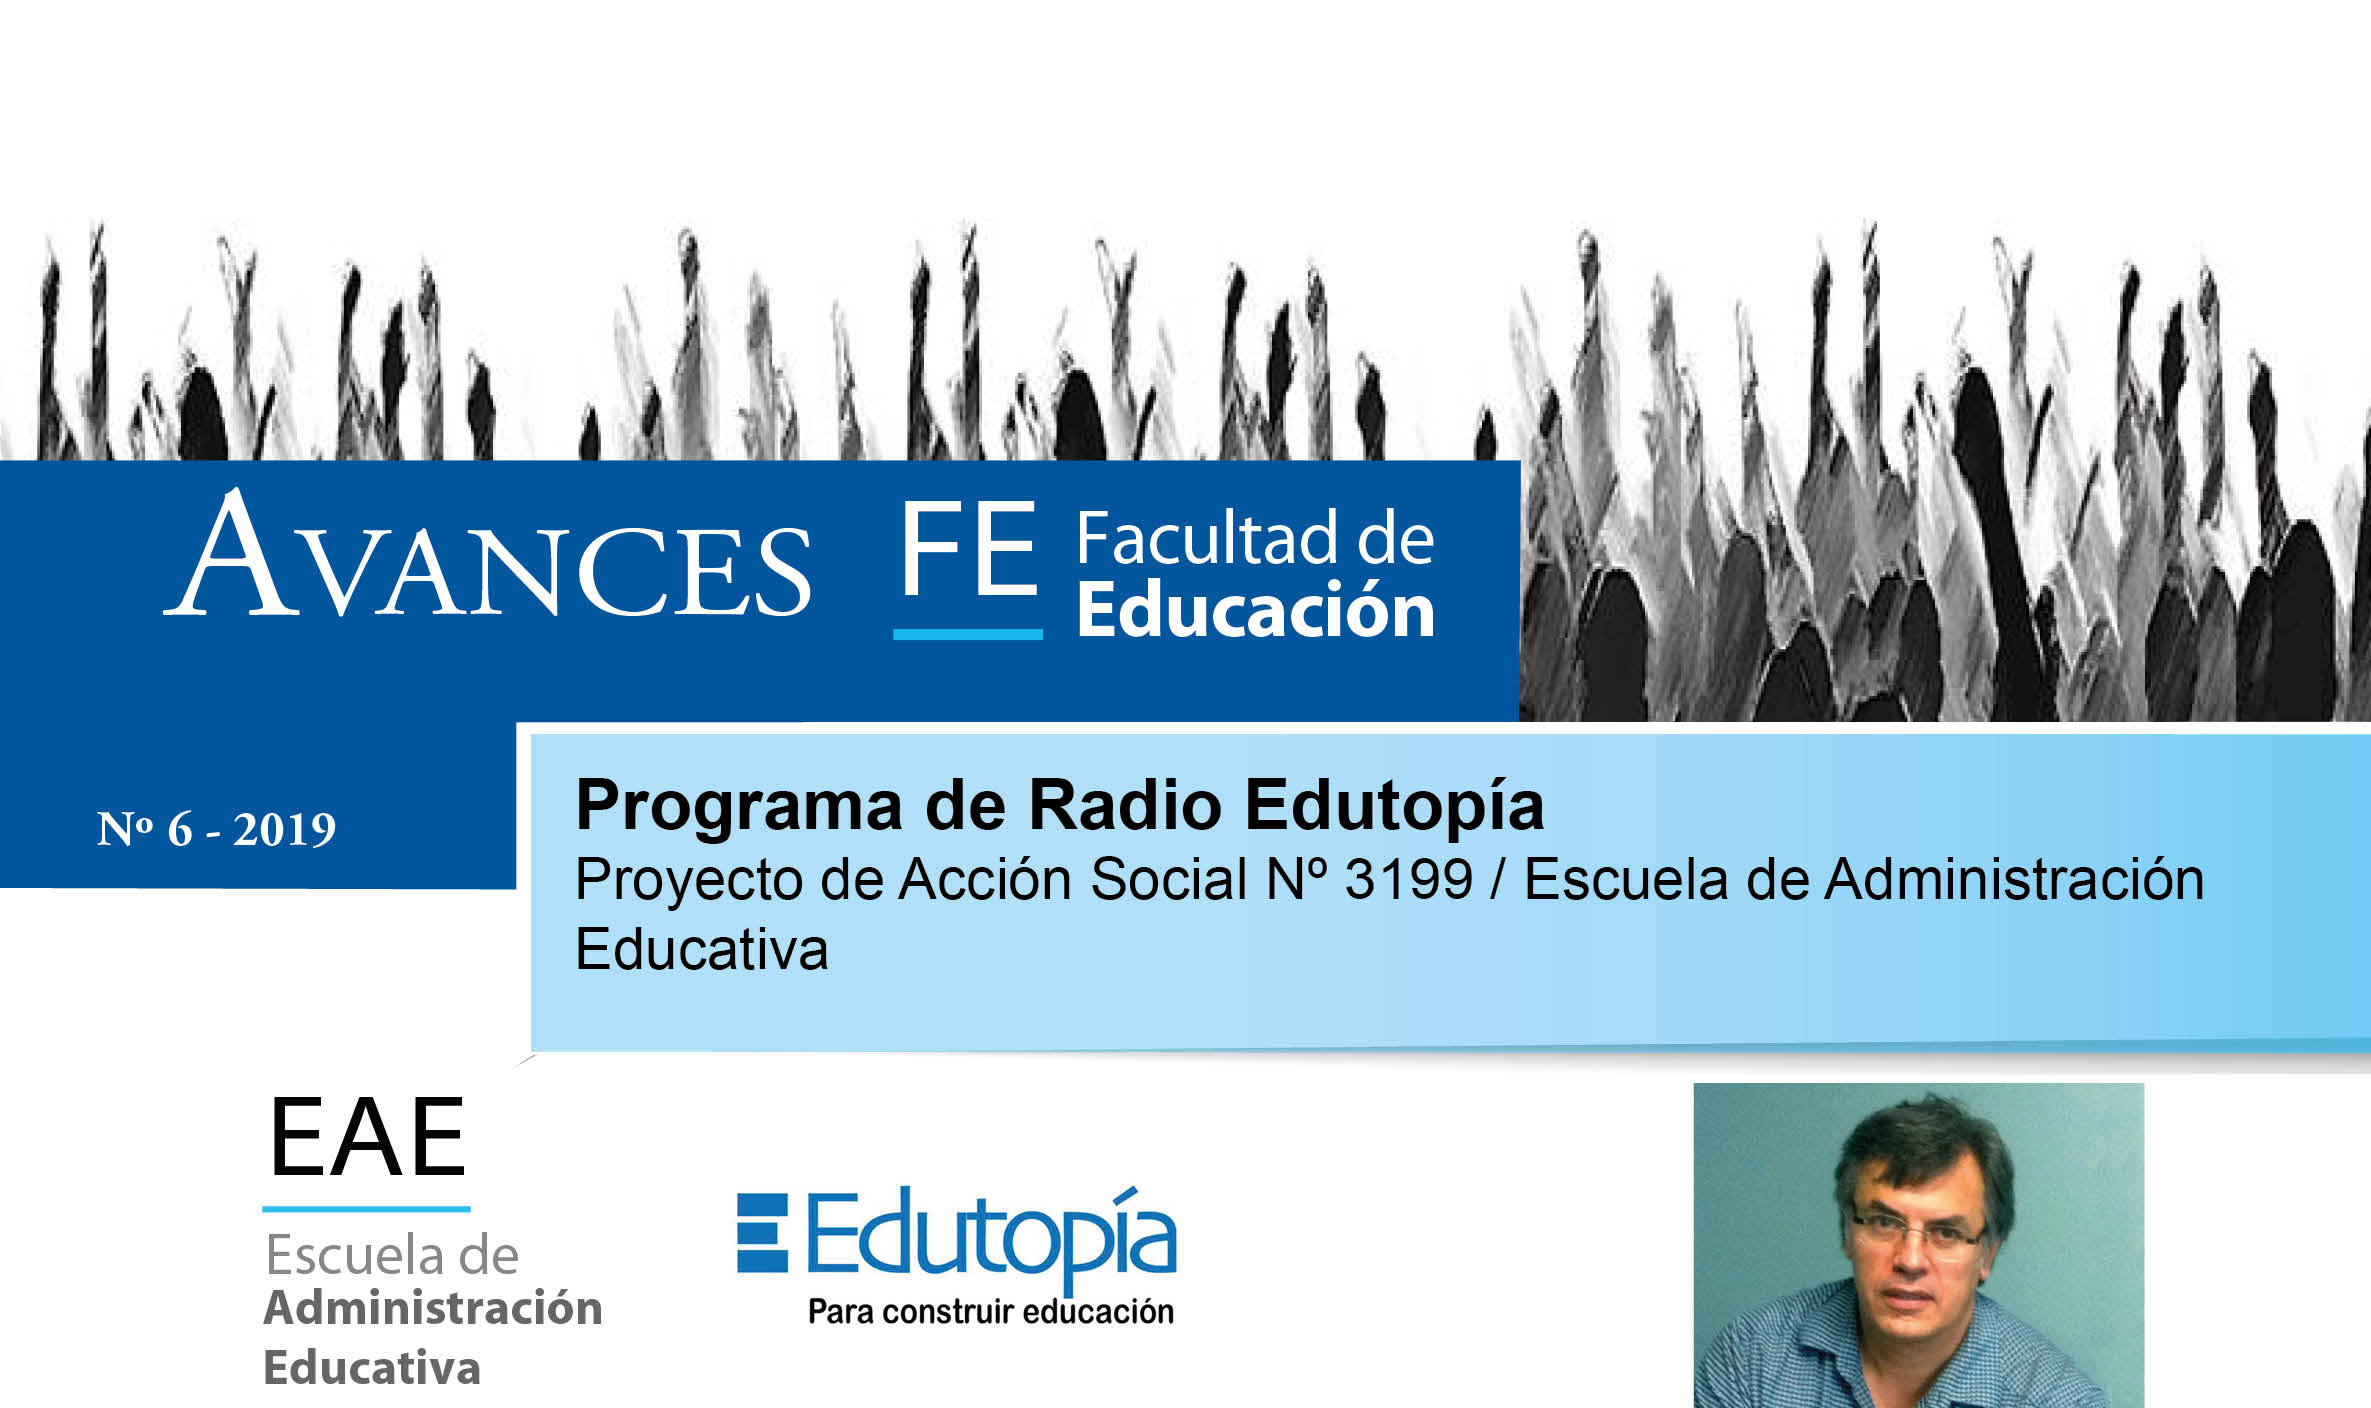 Avances FE de la Facultad de Educación presenta el proyecto de acción social: Programa de Radio Edutopia